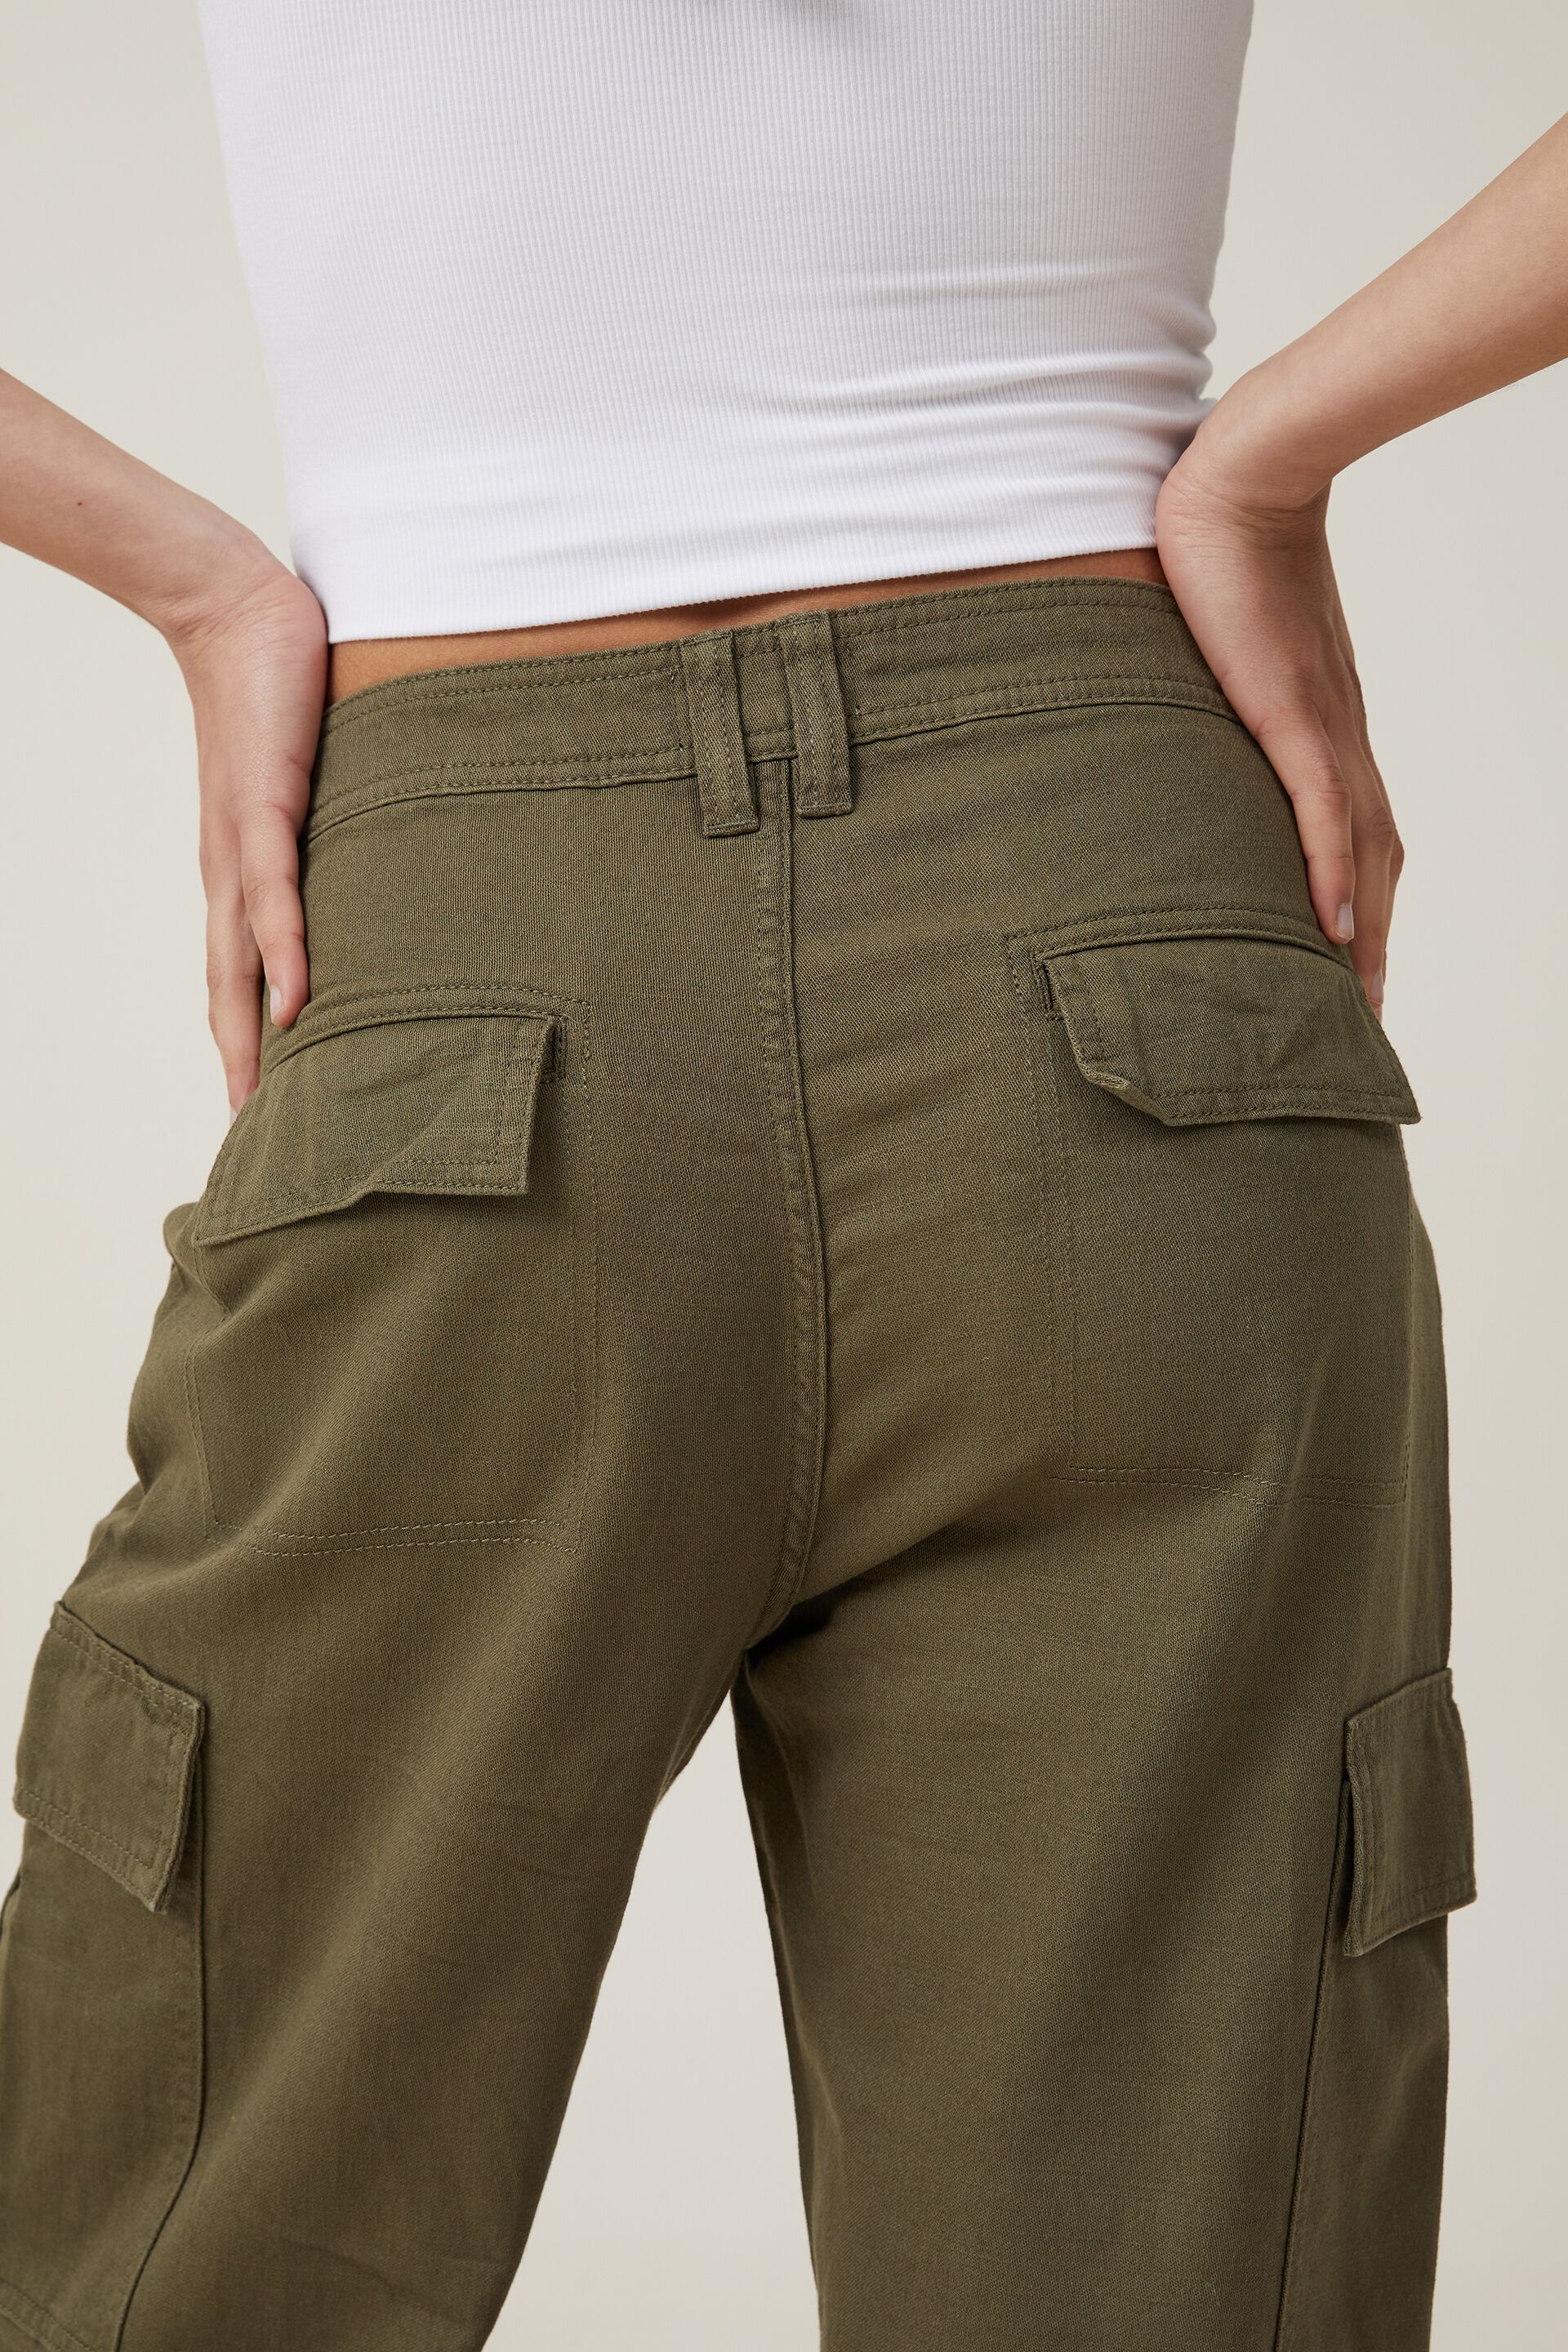 GIDDU'S | Active Wear Soft Cotton Track Pants for Men | Regular fit Cargo  Styled Pyjamas |D Pocket Lower for Men